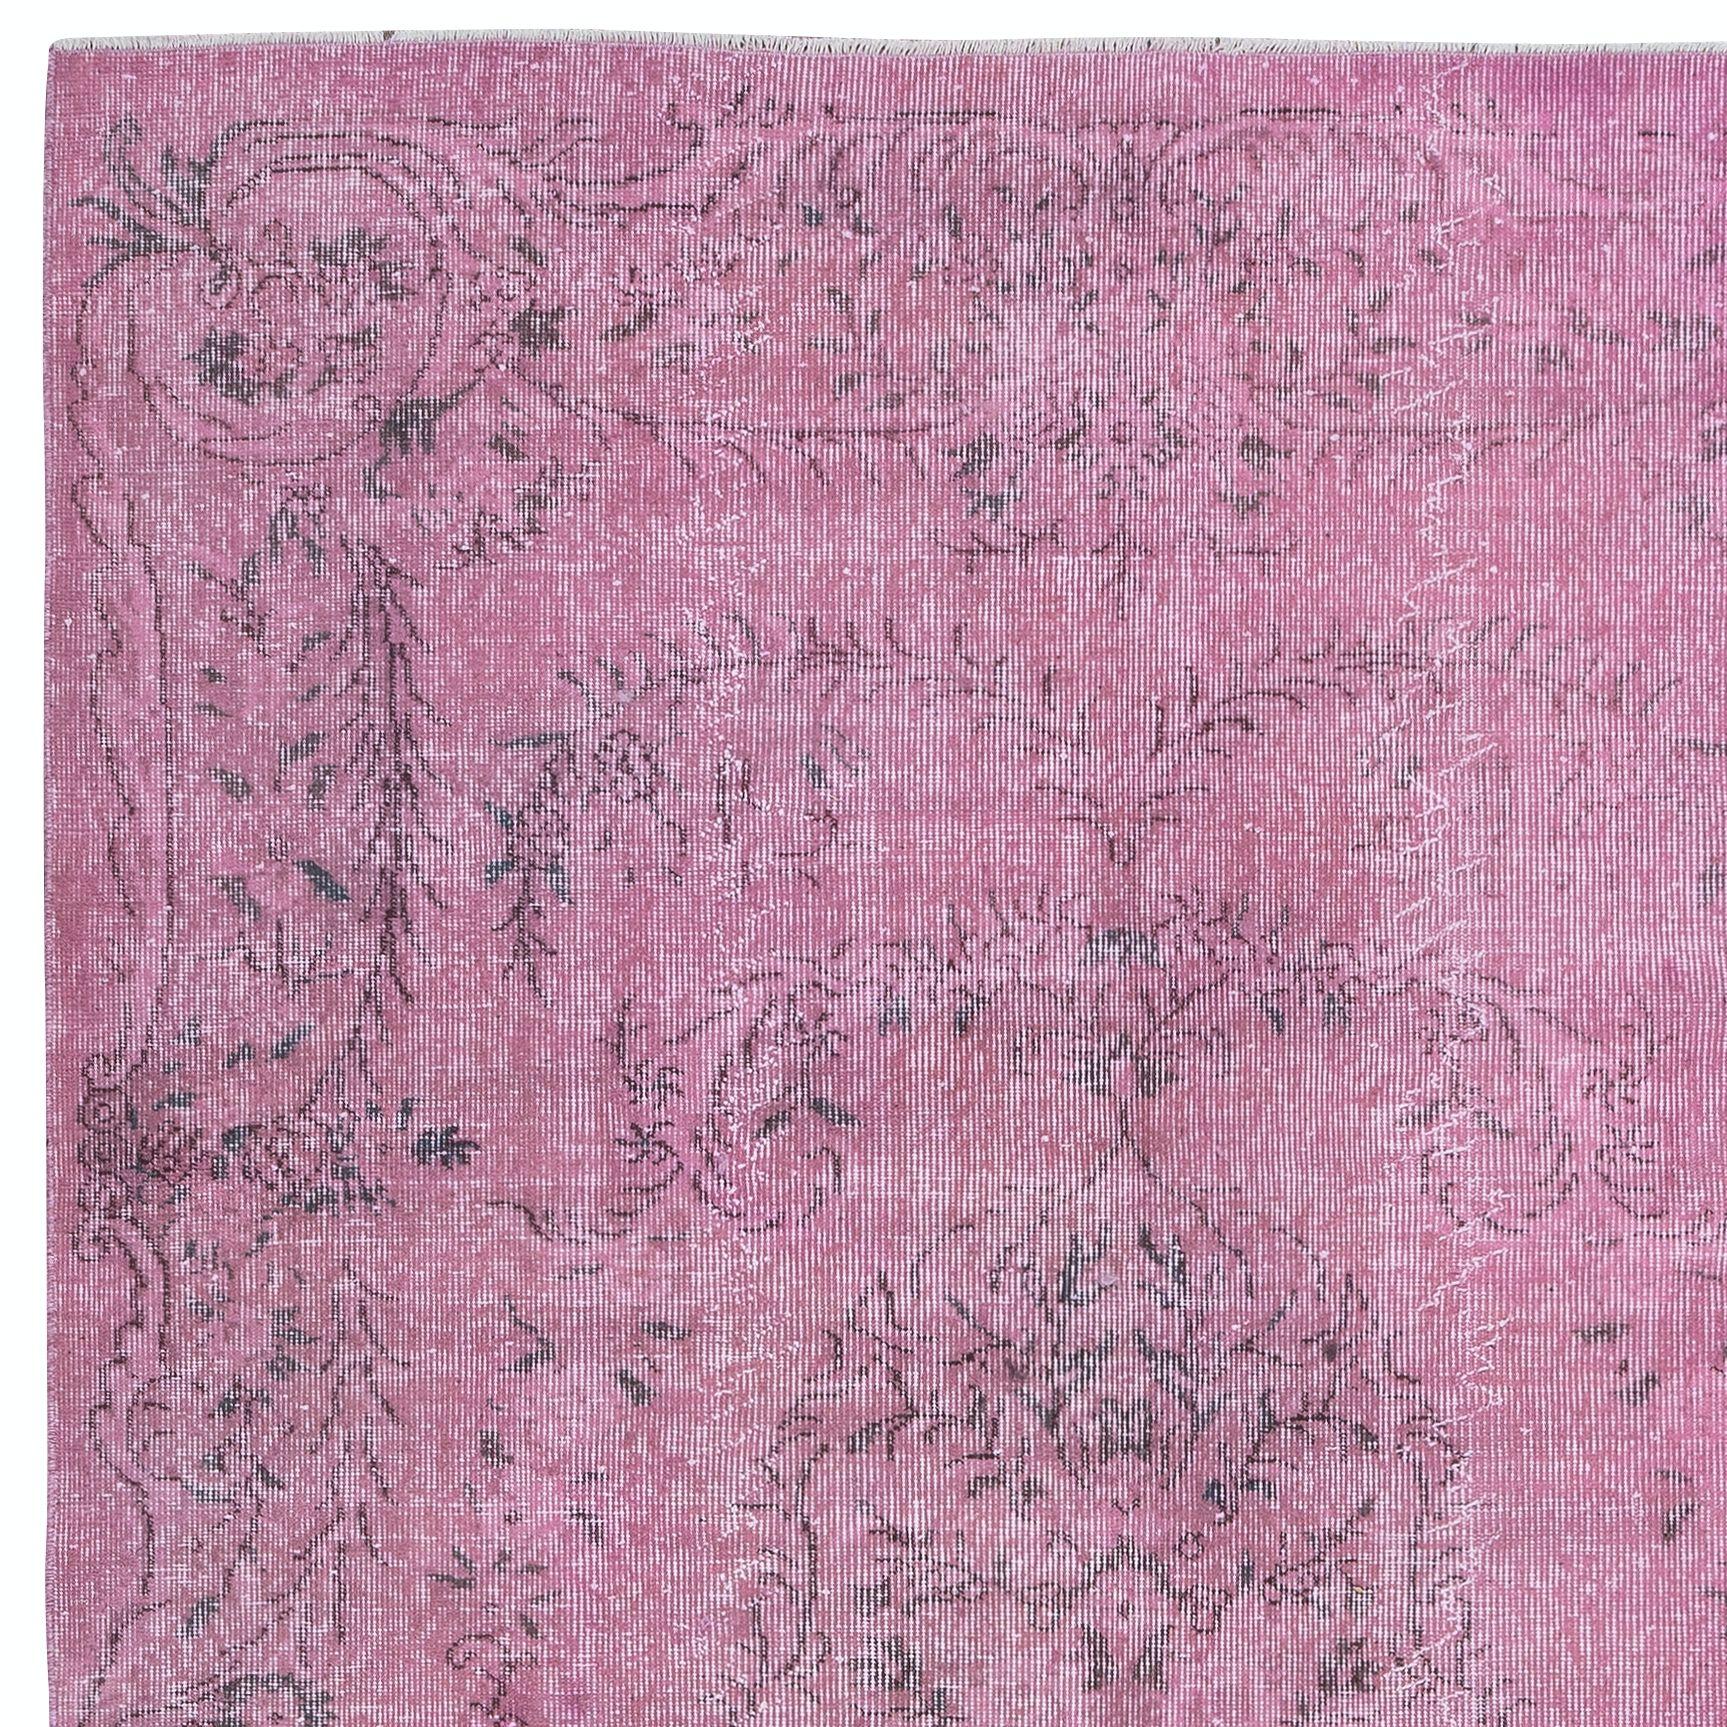 Turc 5.8x9.2 Ft Light Pink Wool Area Rug for Modern Interiors, Handmade in Turkey (Tapis de laine rose clair pour intérieurs modernes, fait à la main en Turquie) en vente